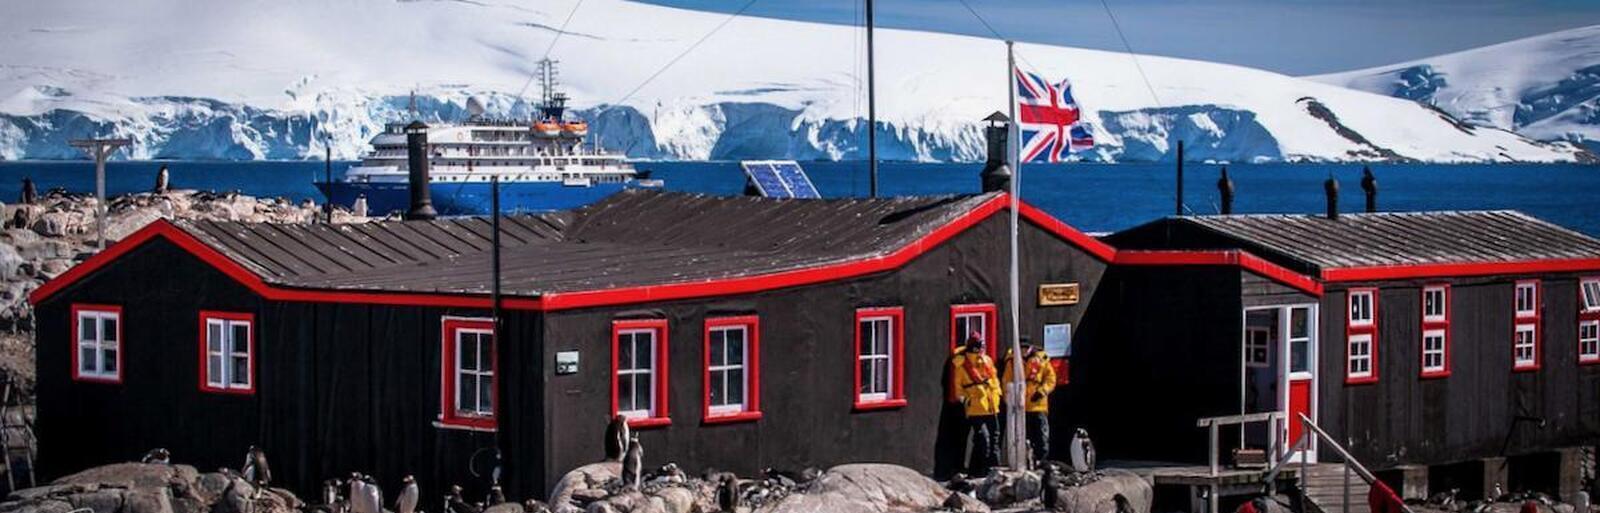 Антарктида - круиз на судне бутик-отеле SH Diana или SH Vega в 2023 / 2024 году